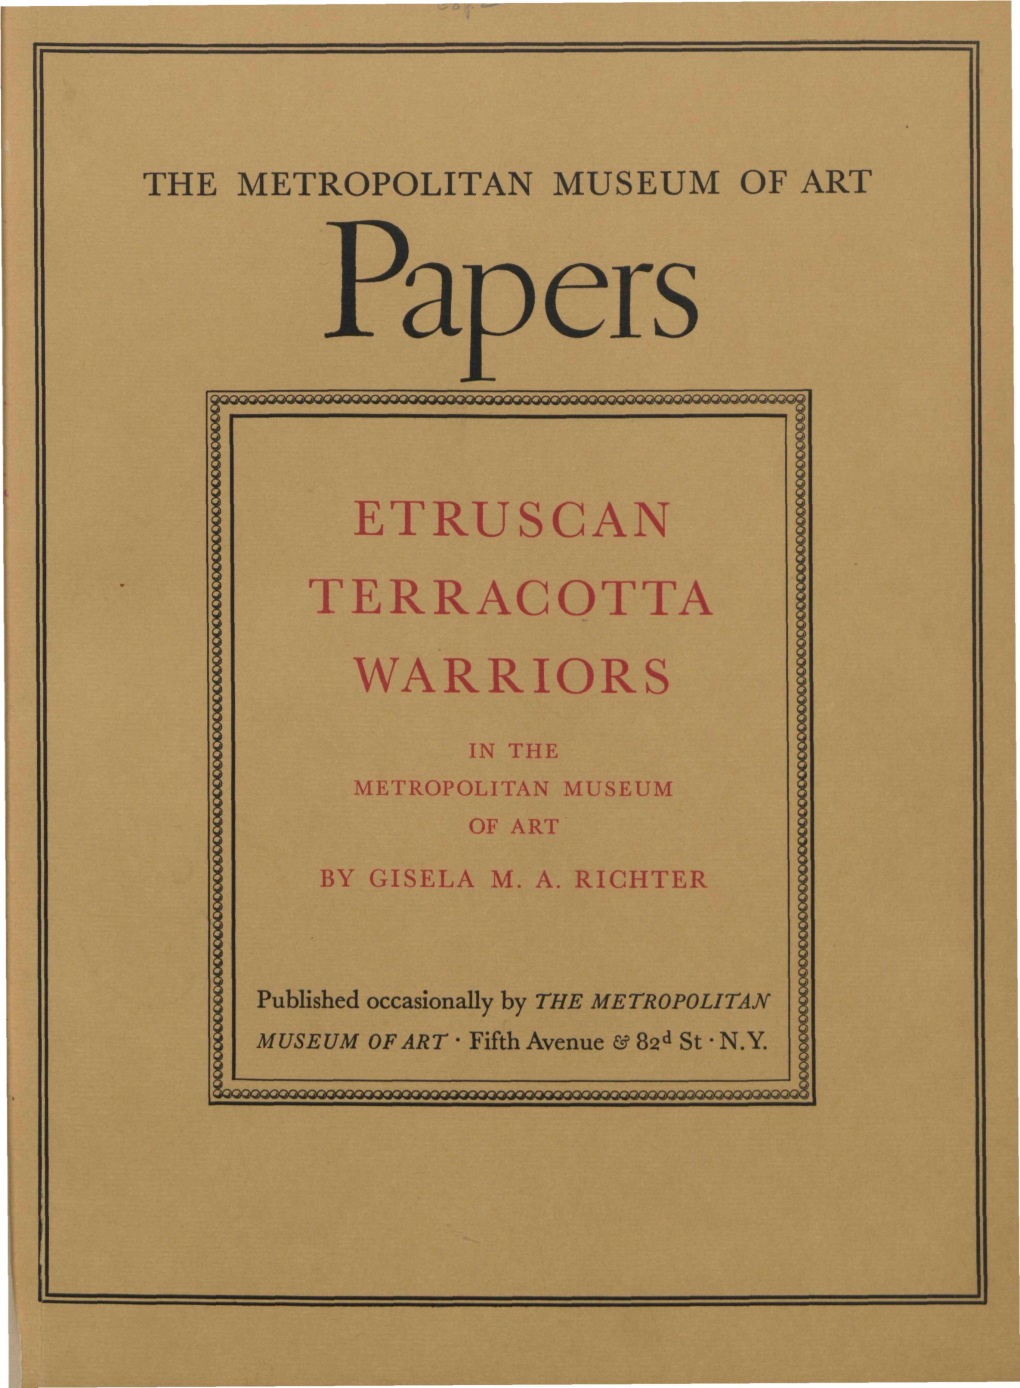 Etruscan Terracotta Warriors